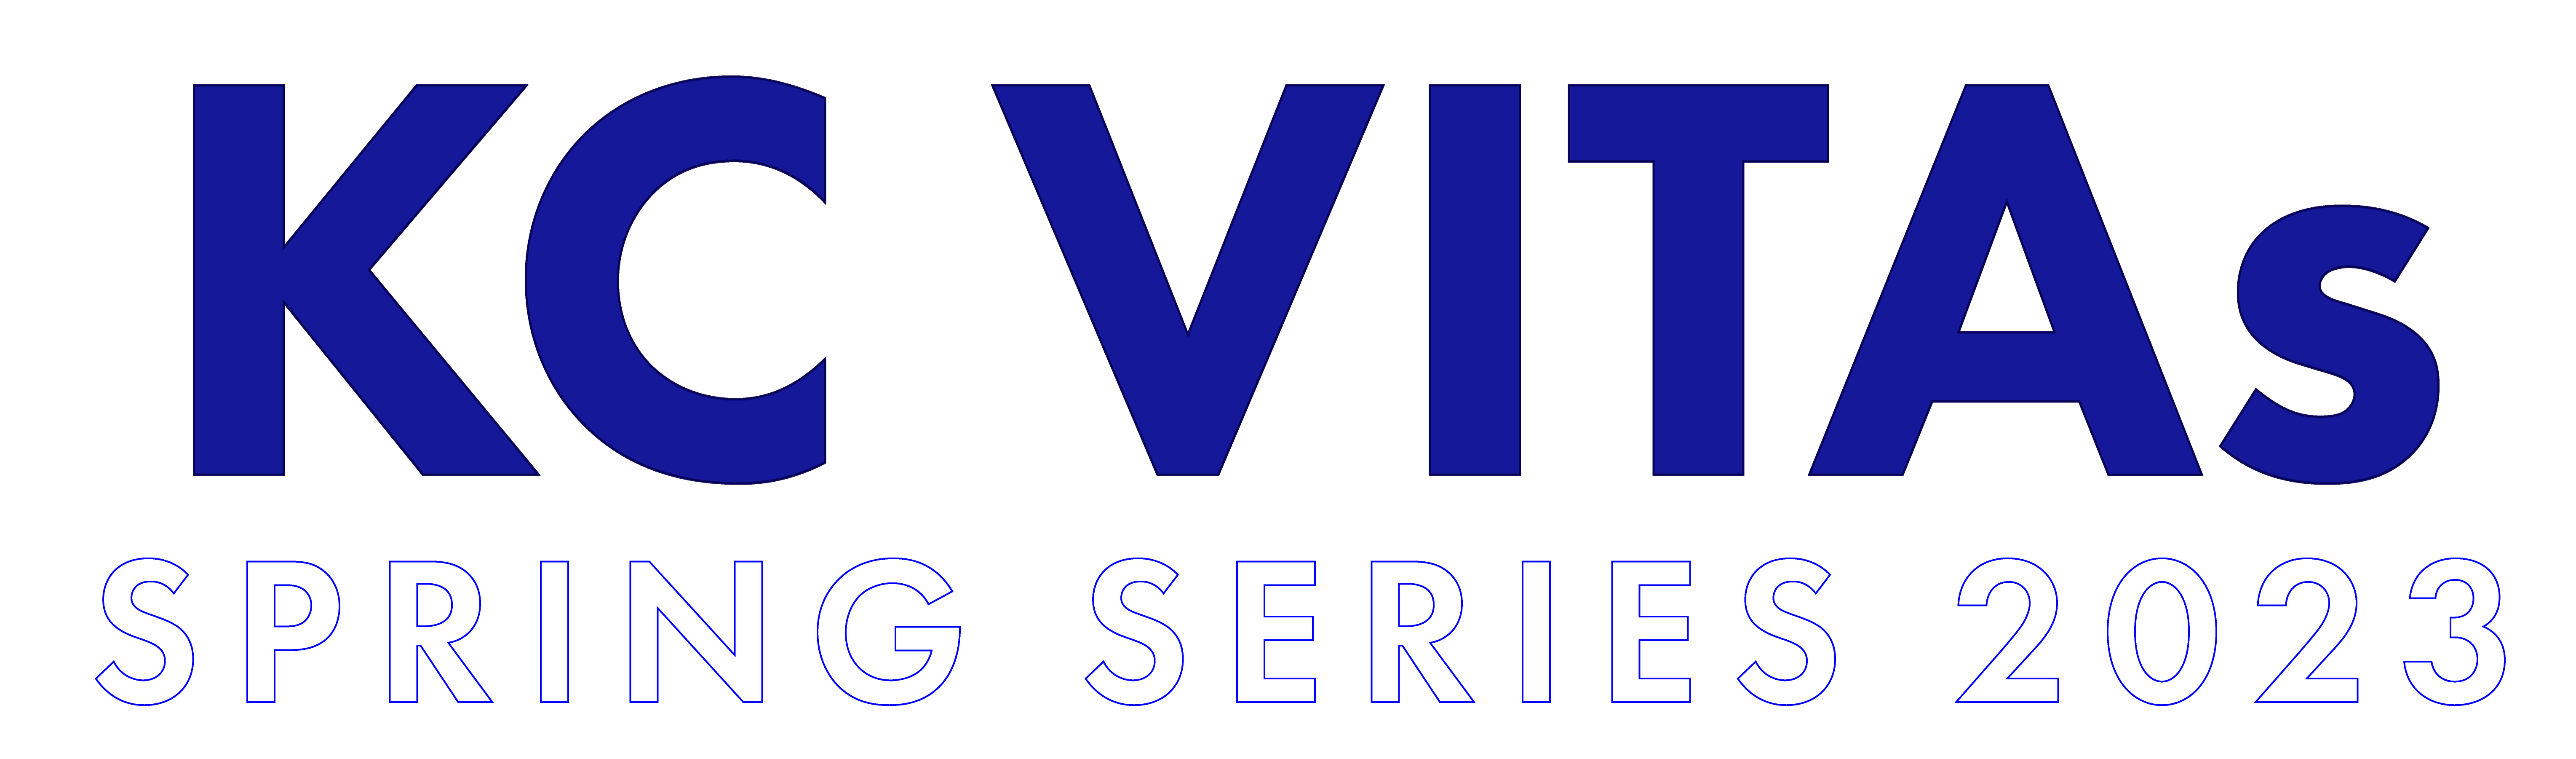 KC VITAs Spring Series 2023